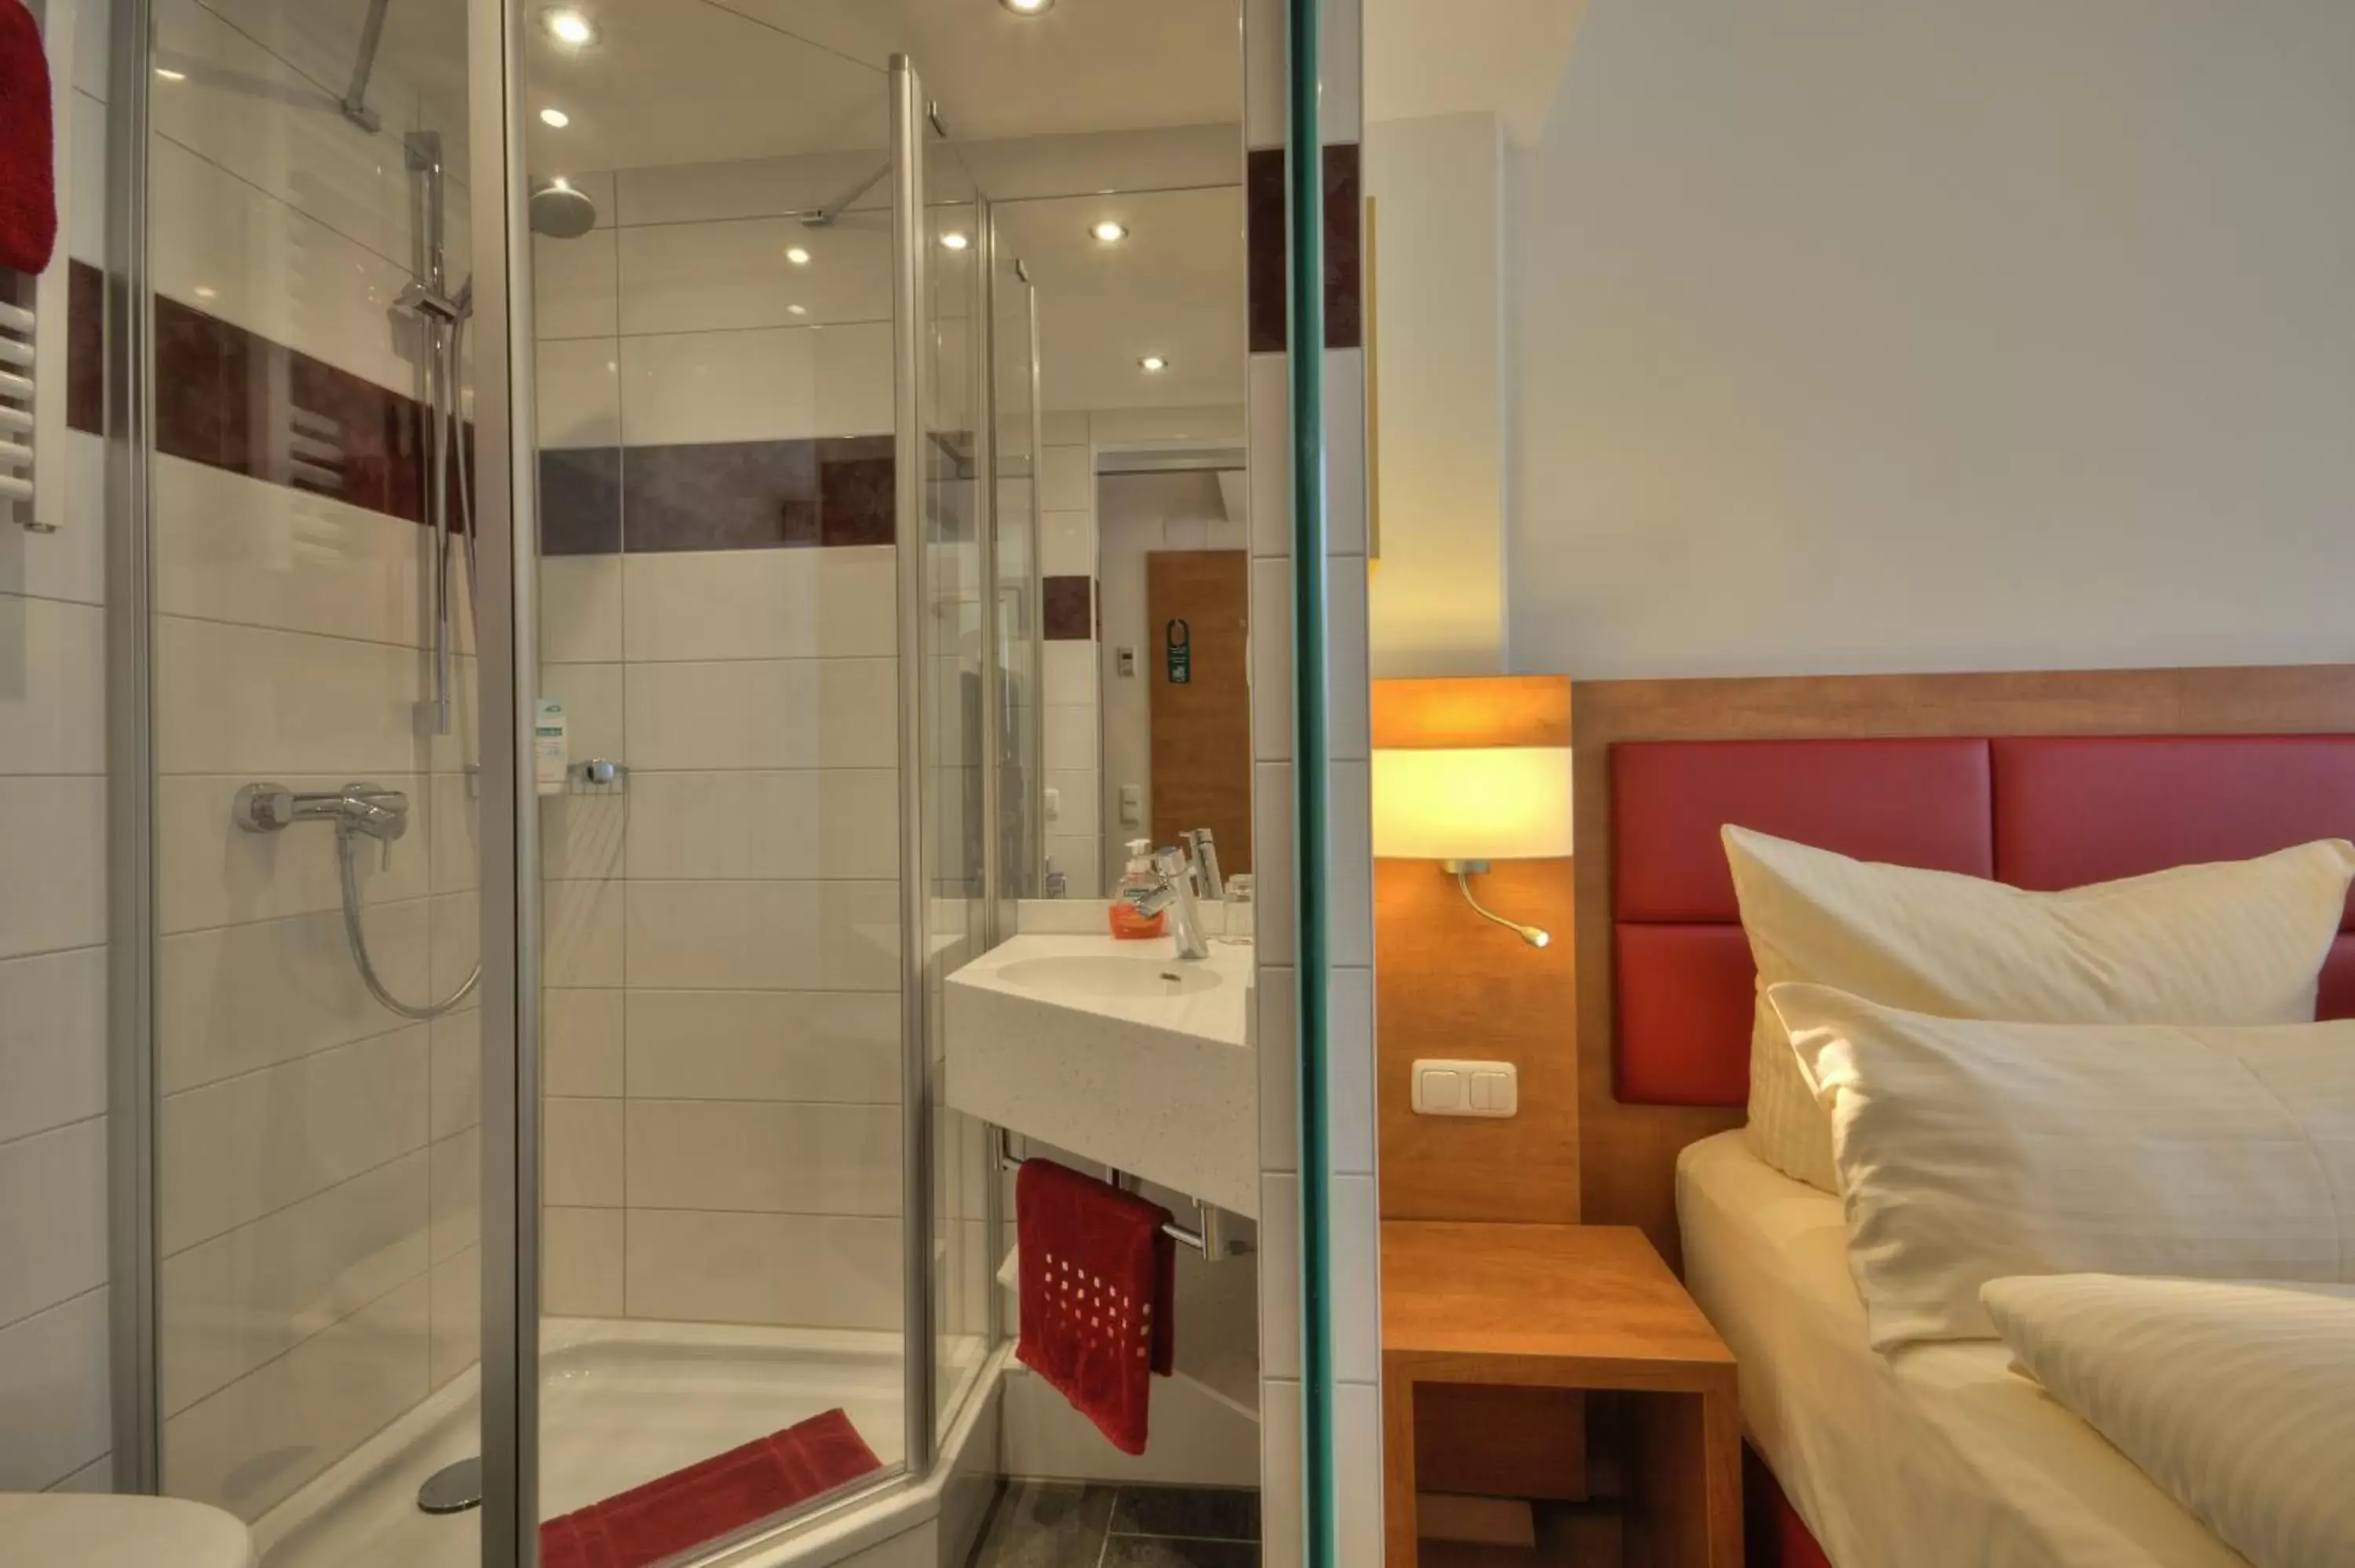 Decorative detail, Bathroom in Hotel Condor